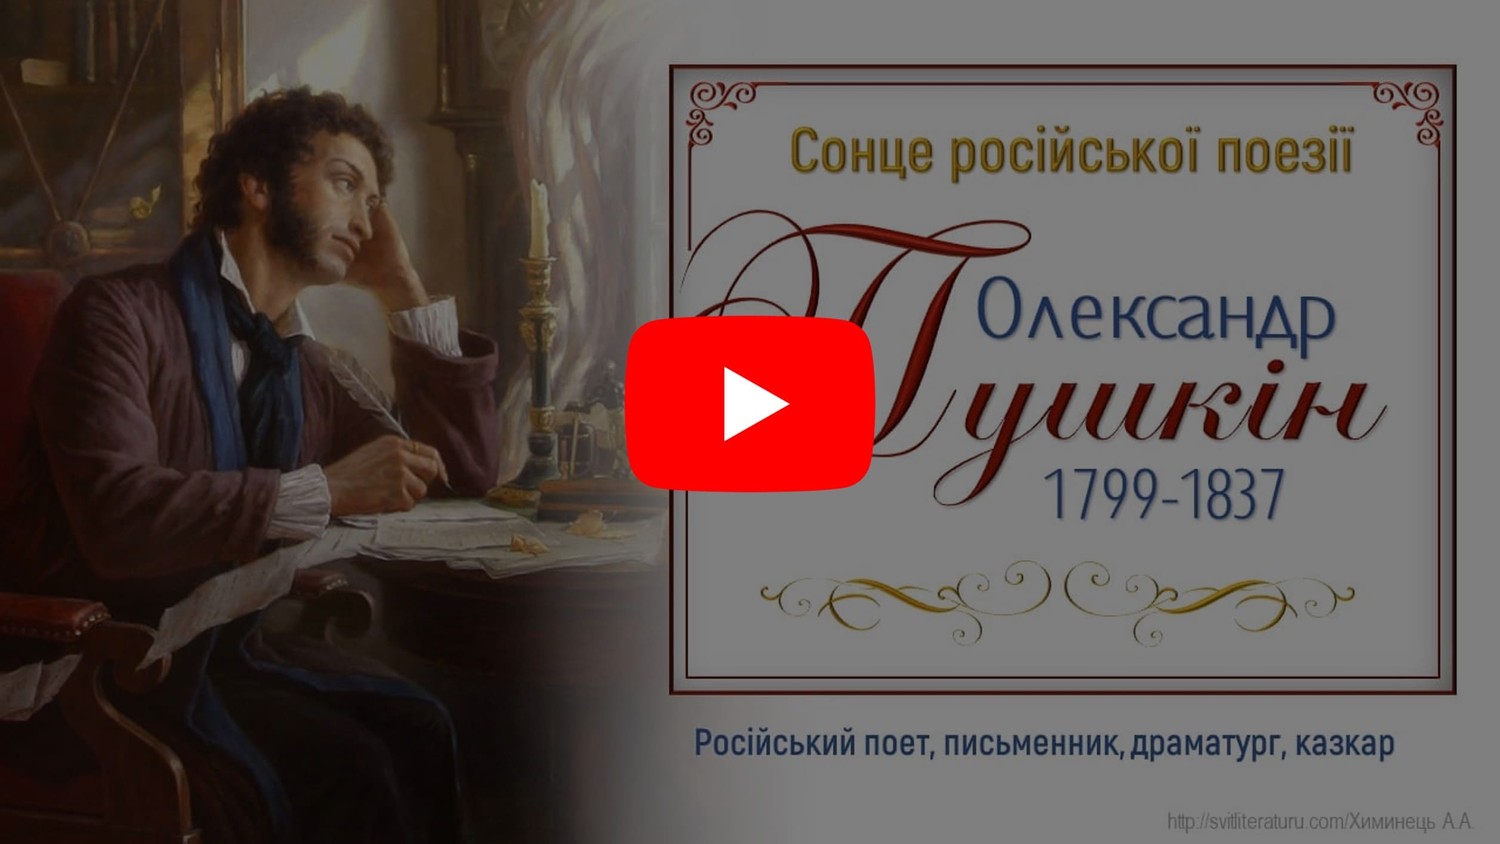 Біографія О.Пушкіна. Відеопрезентація